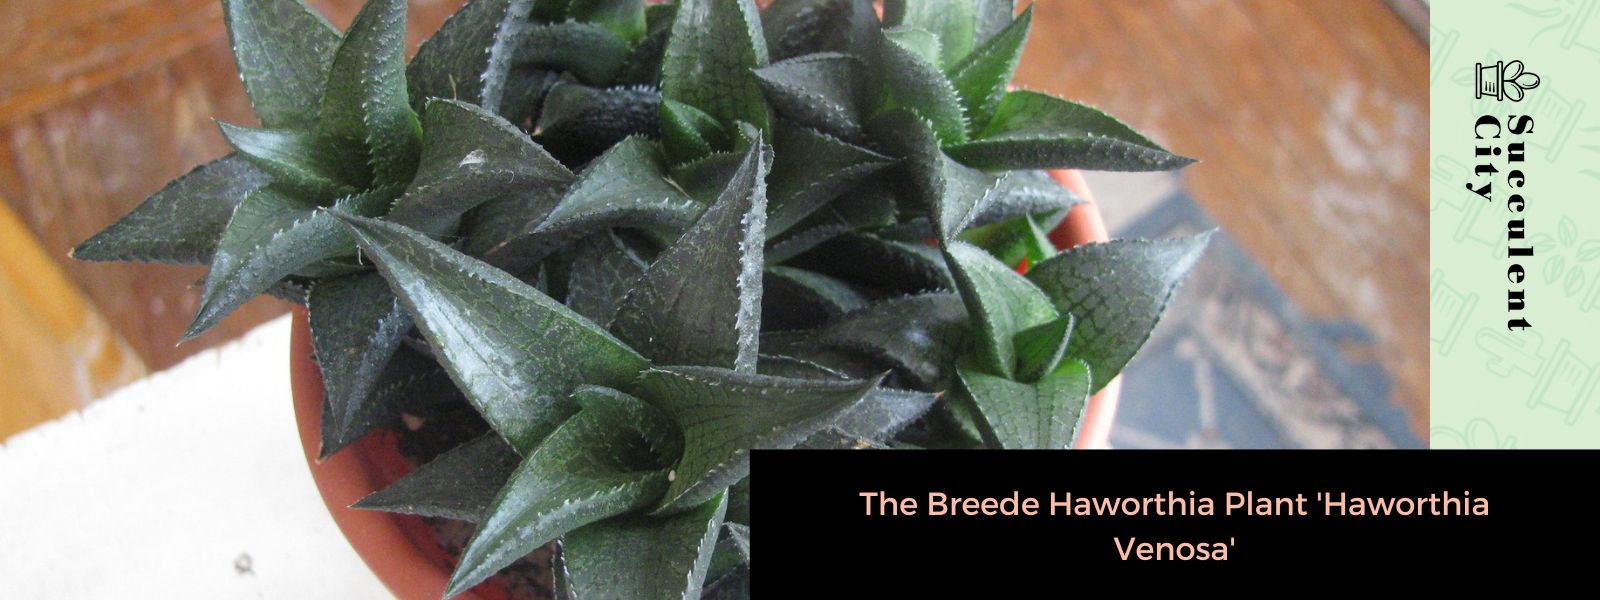 La planta Breede Haworthia 'Haworthia Venosa'